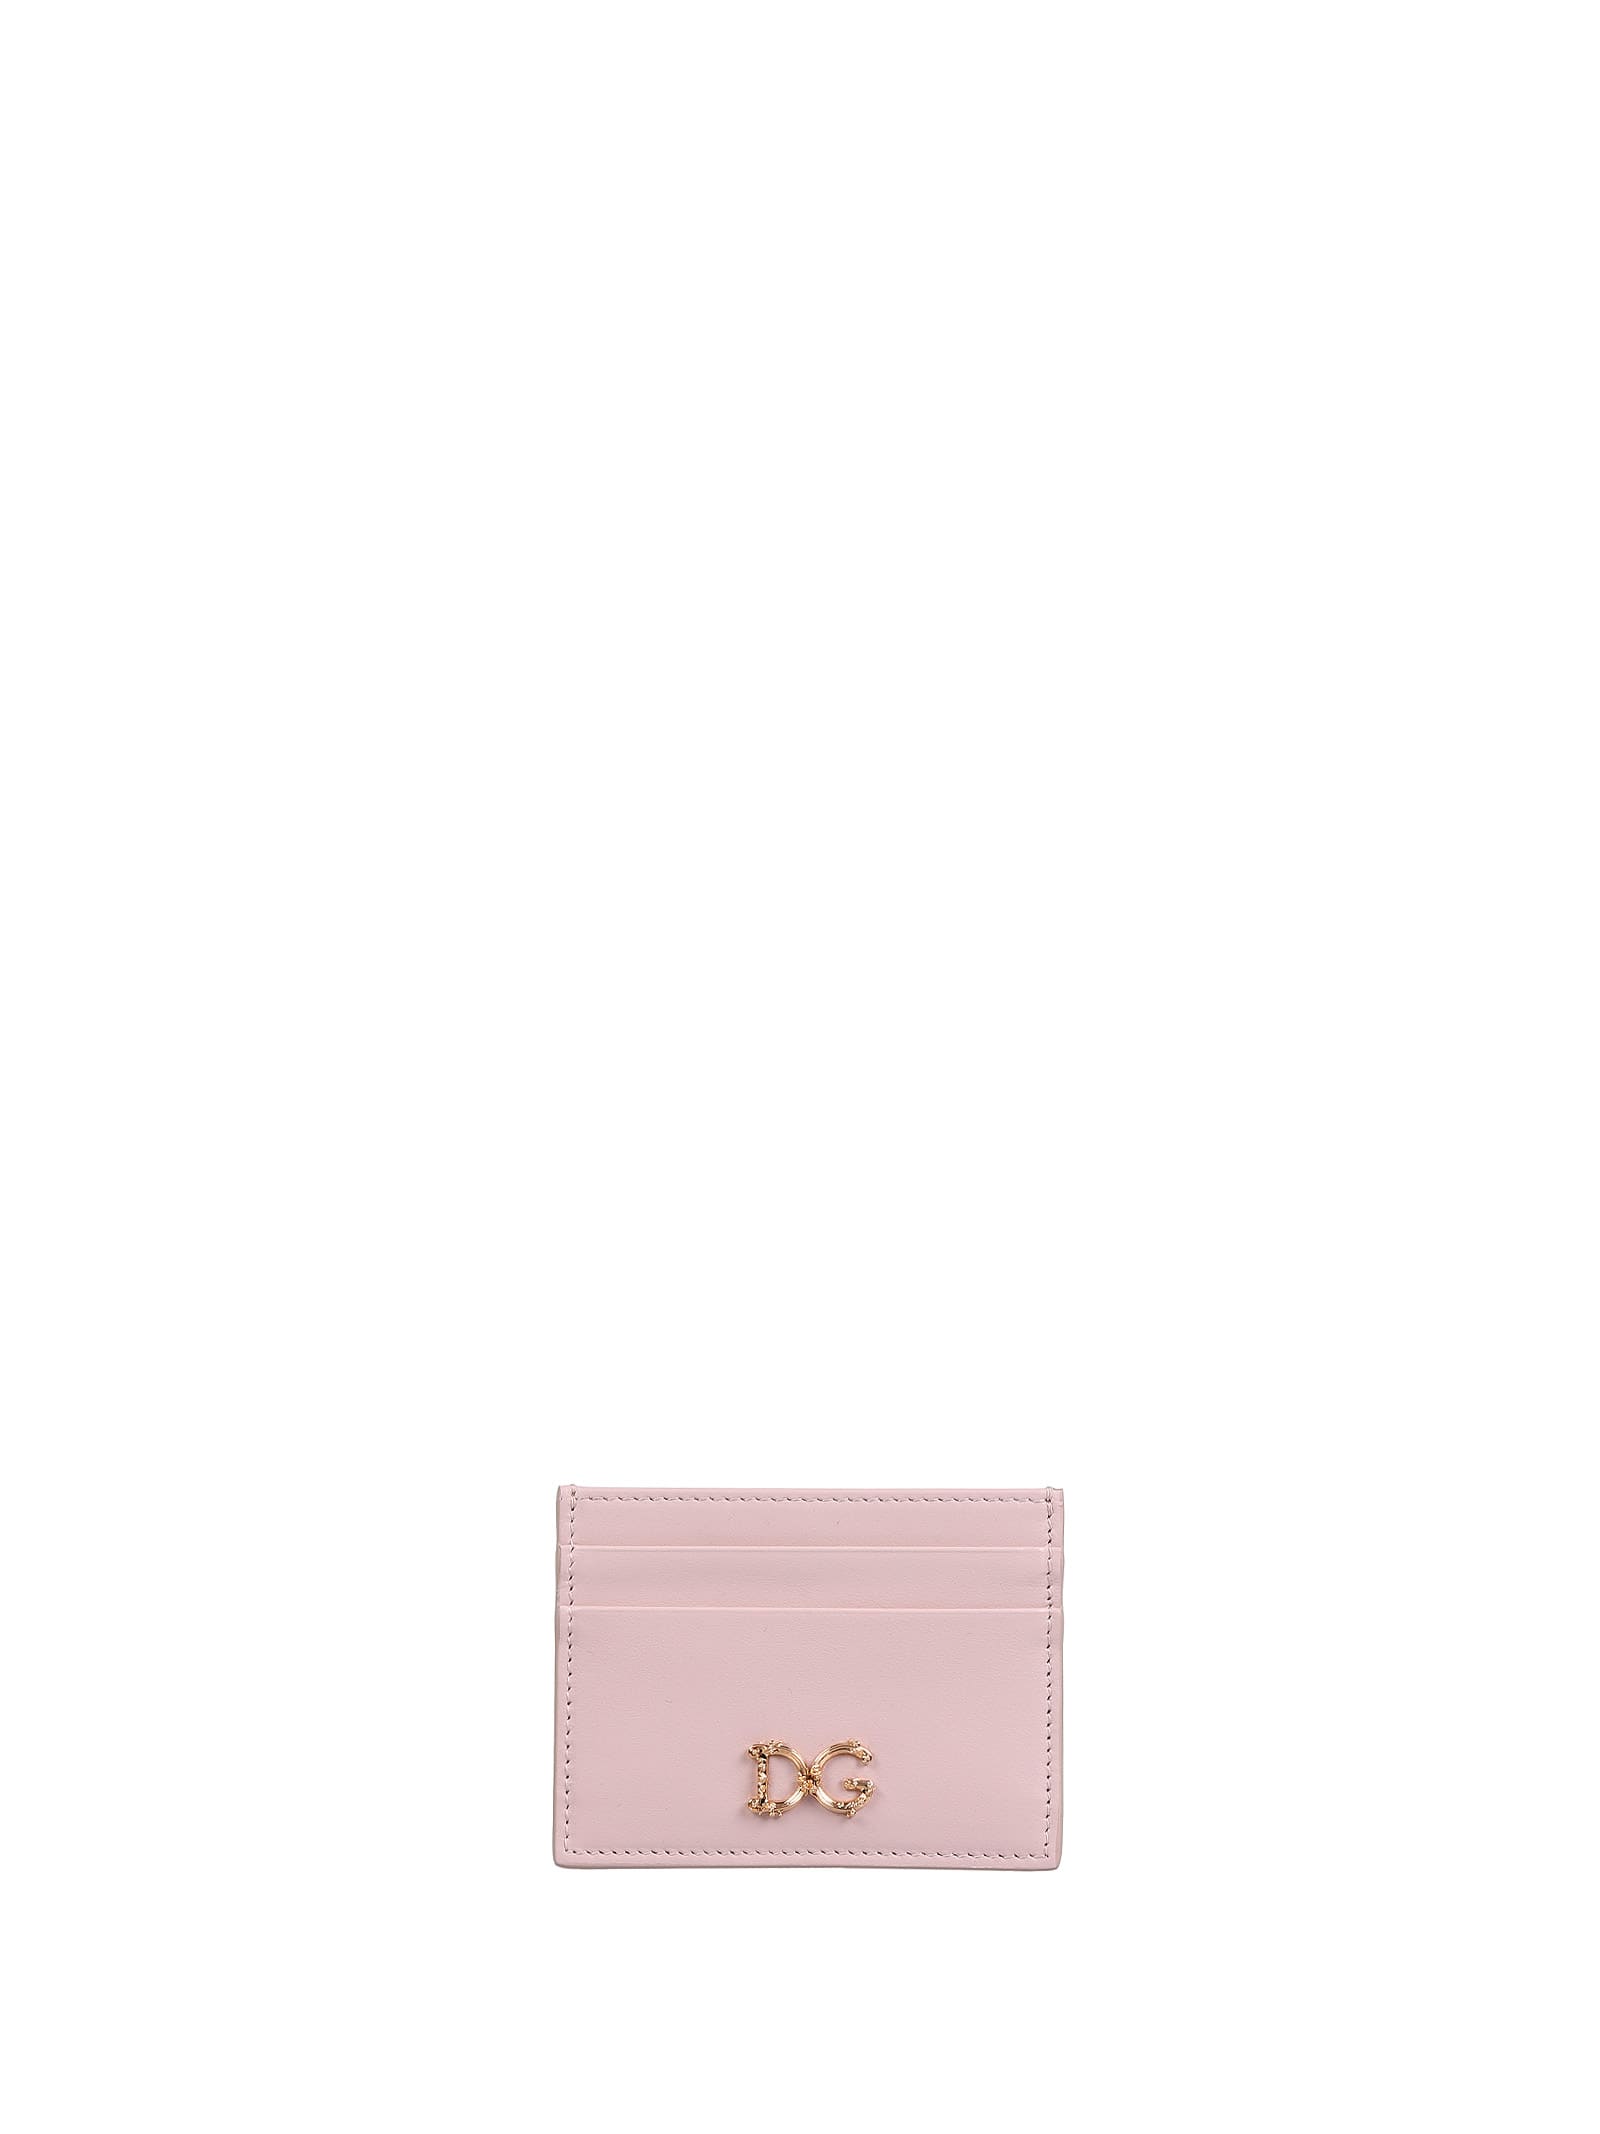 Dolce & Gabbana Dolce & Gabbana Pink Card Holder